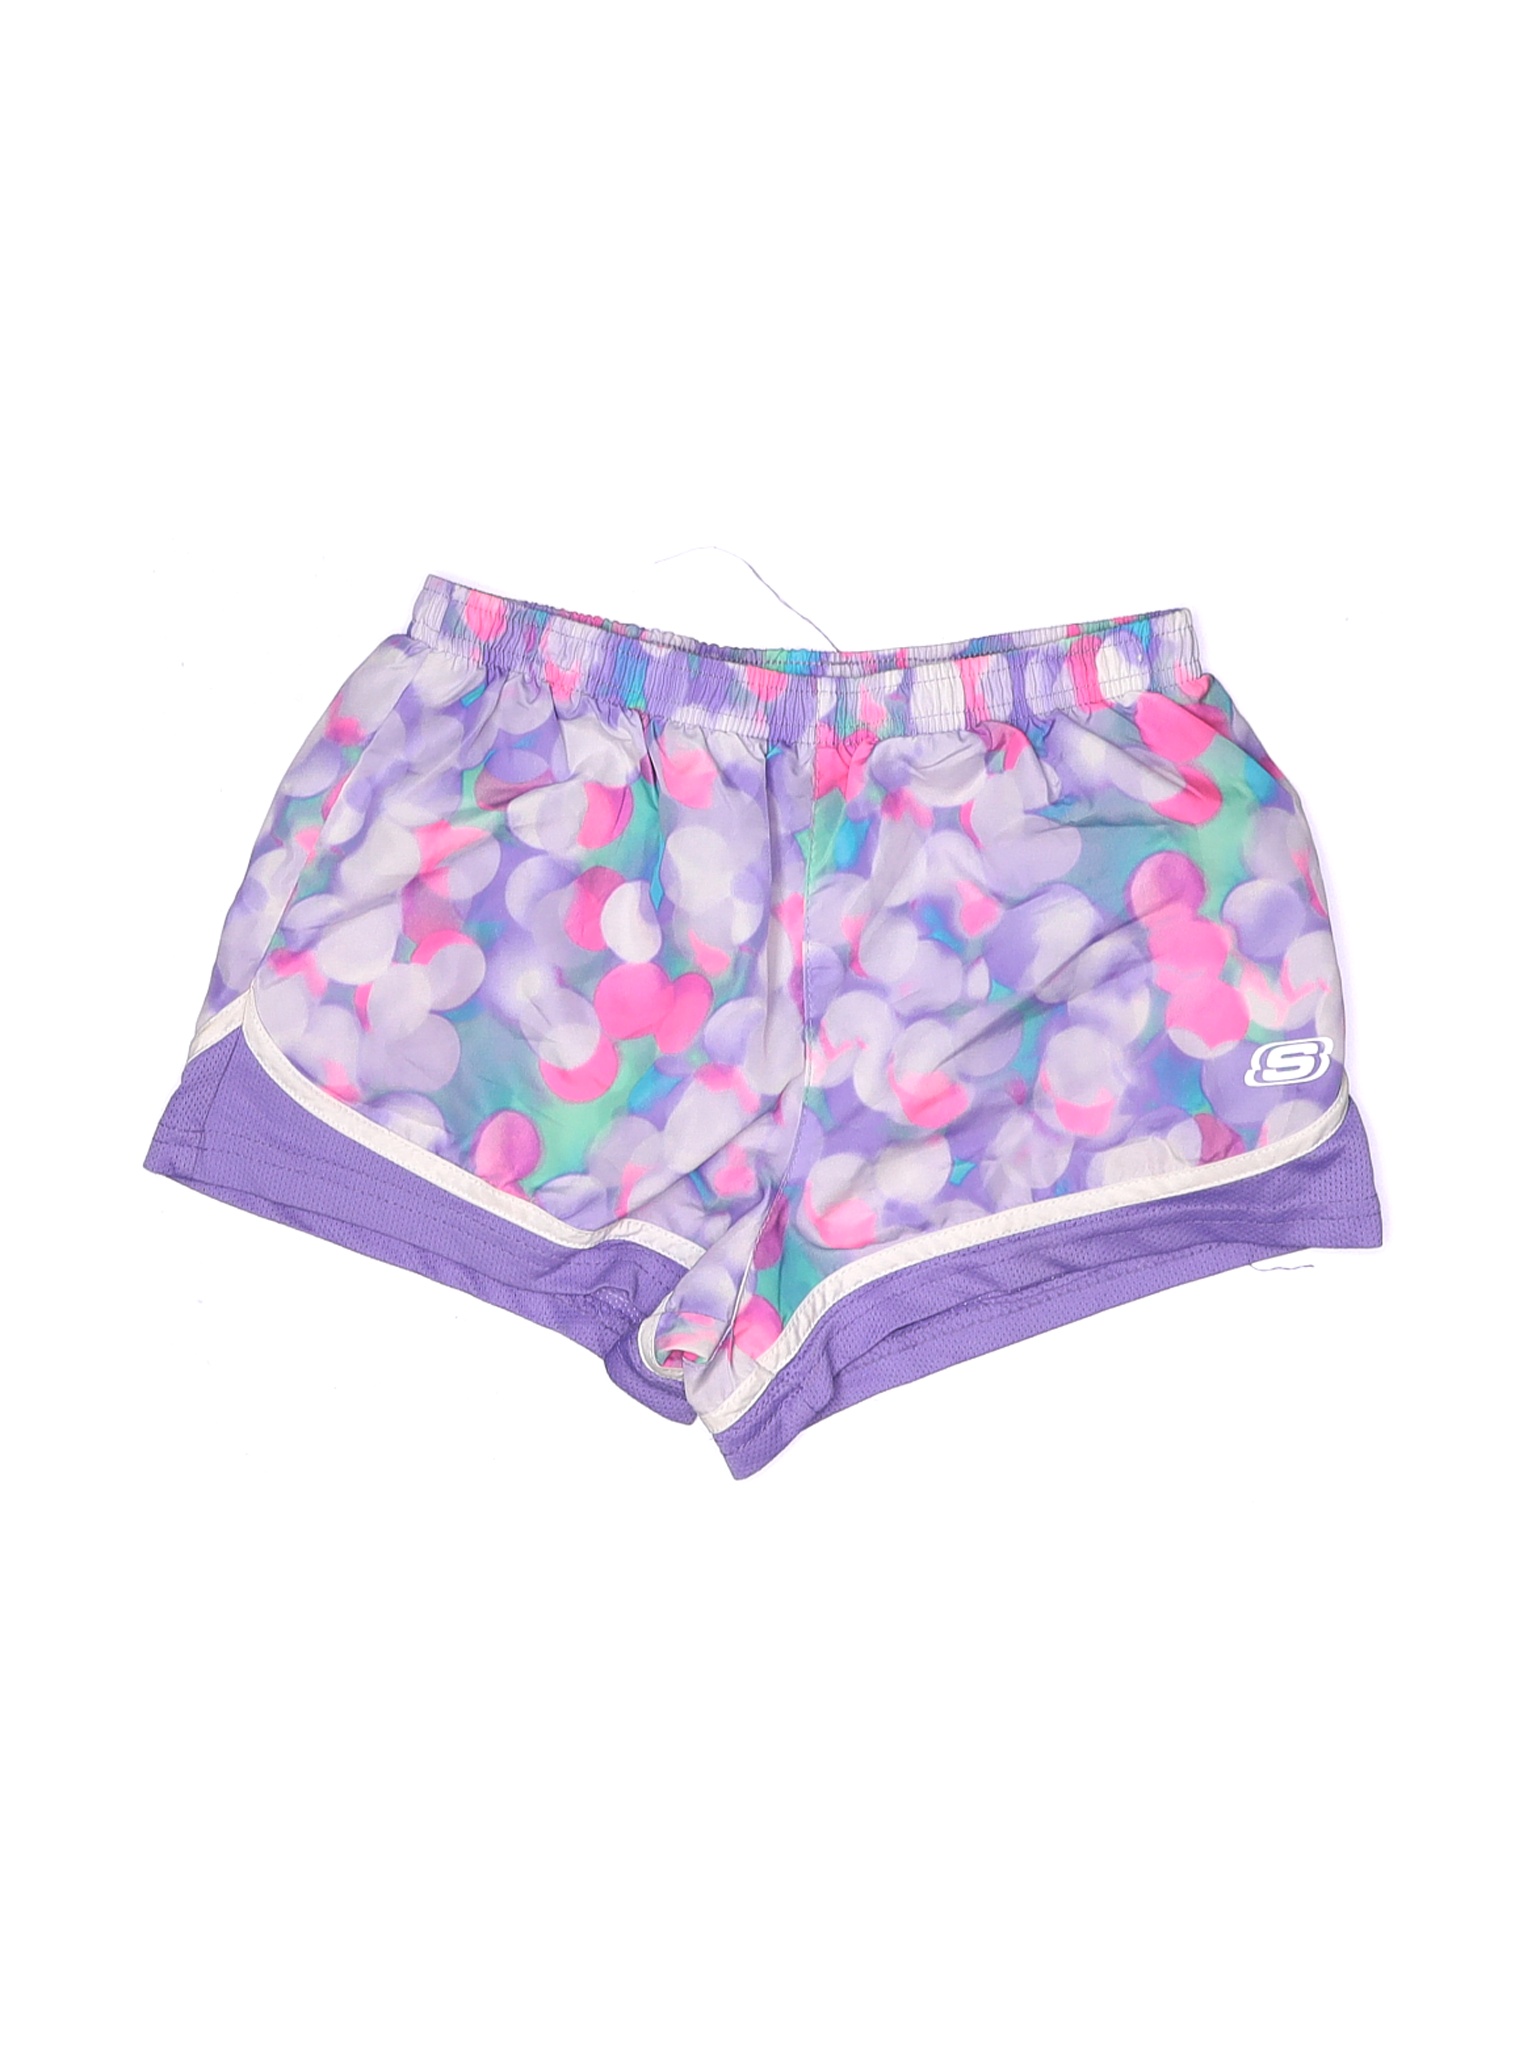 Skechers Girls Purple Athletic Shorts 14 | eBay